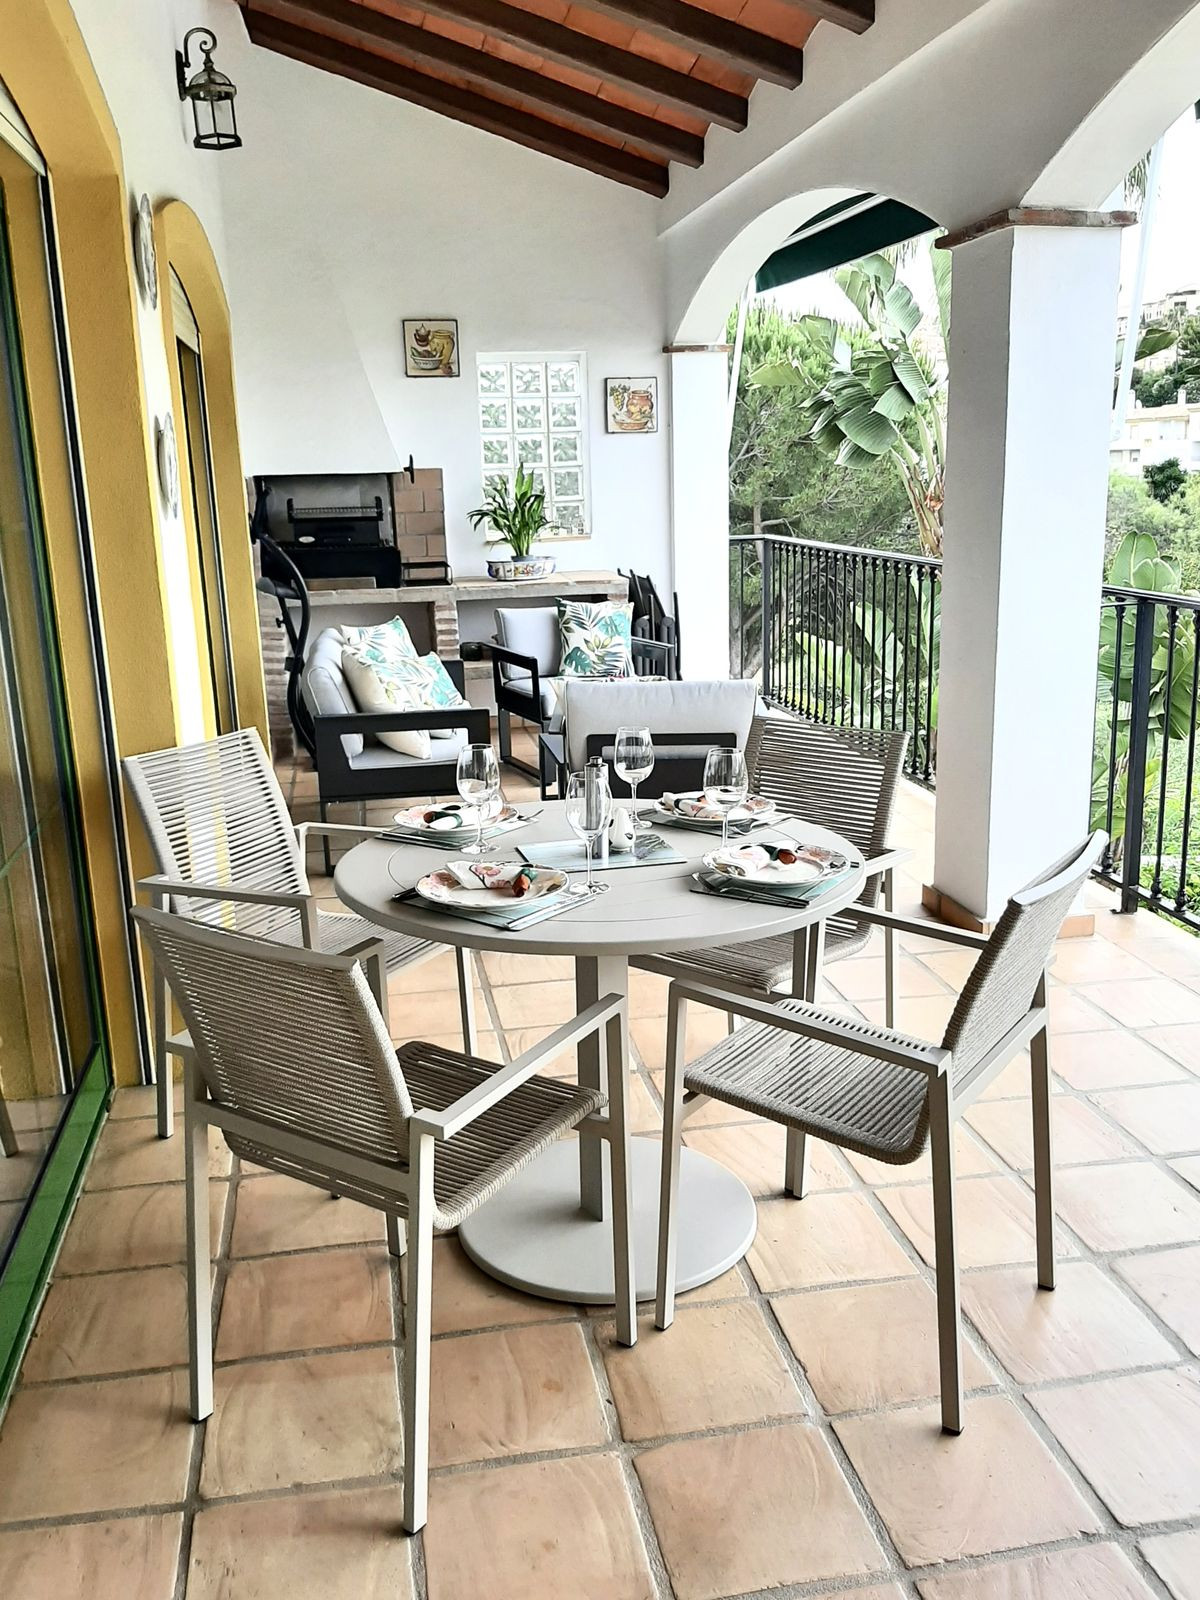 3 Bedroom Detached Villa For Sale Riviera del Sol